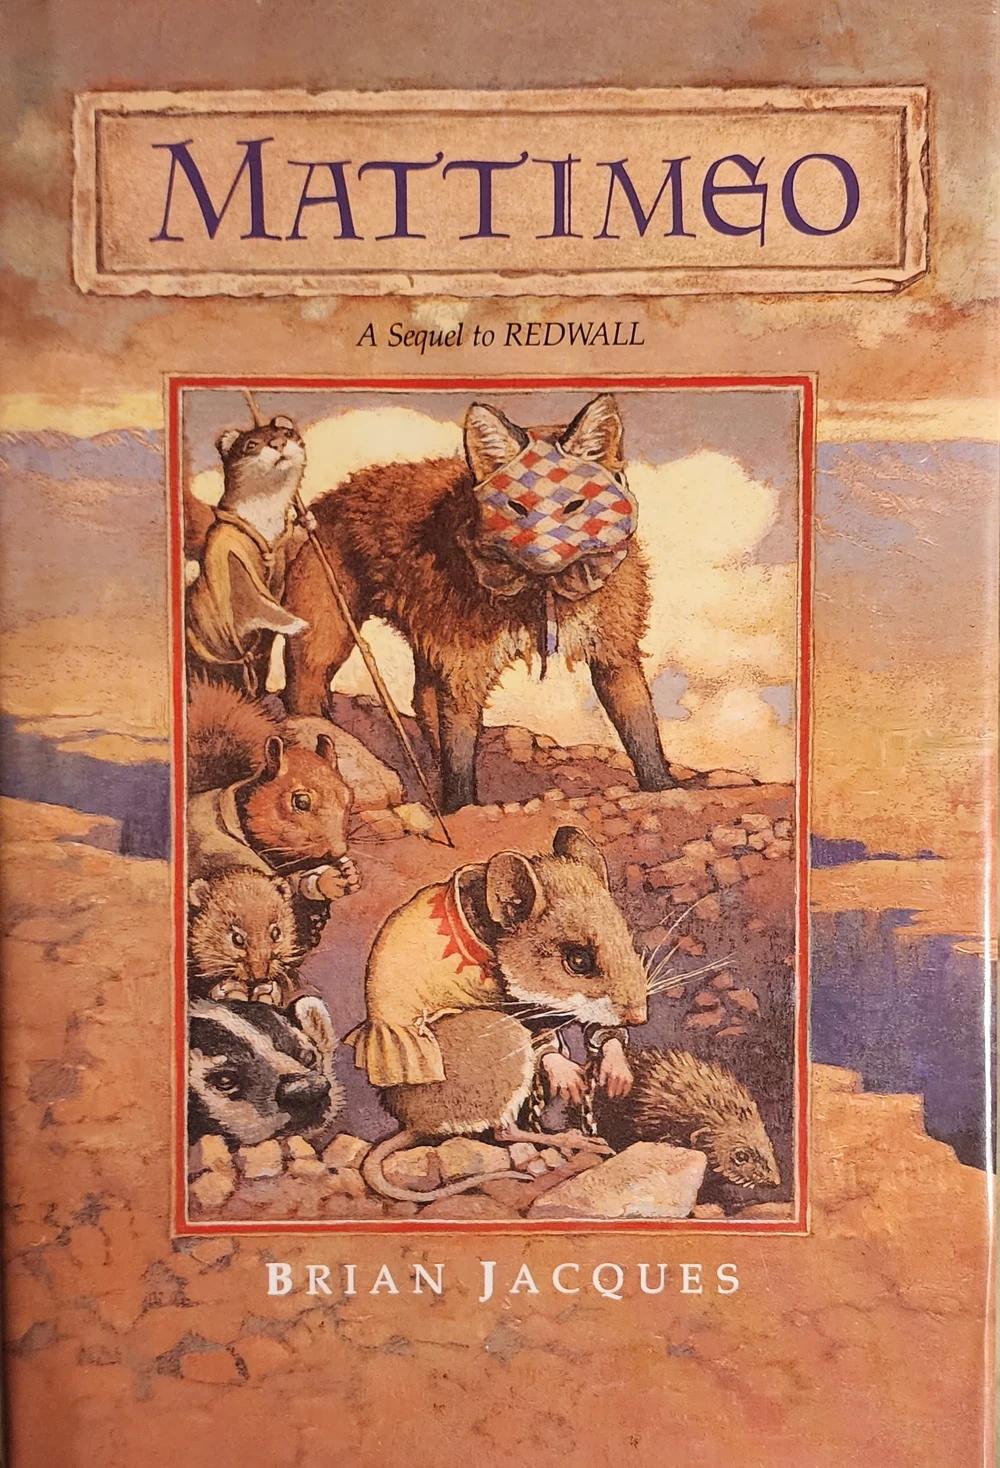 Book cover of Mattimeo.